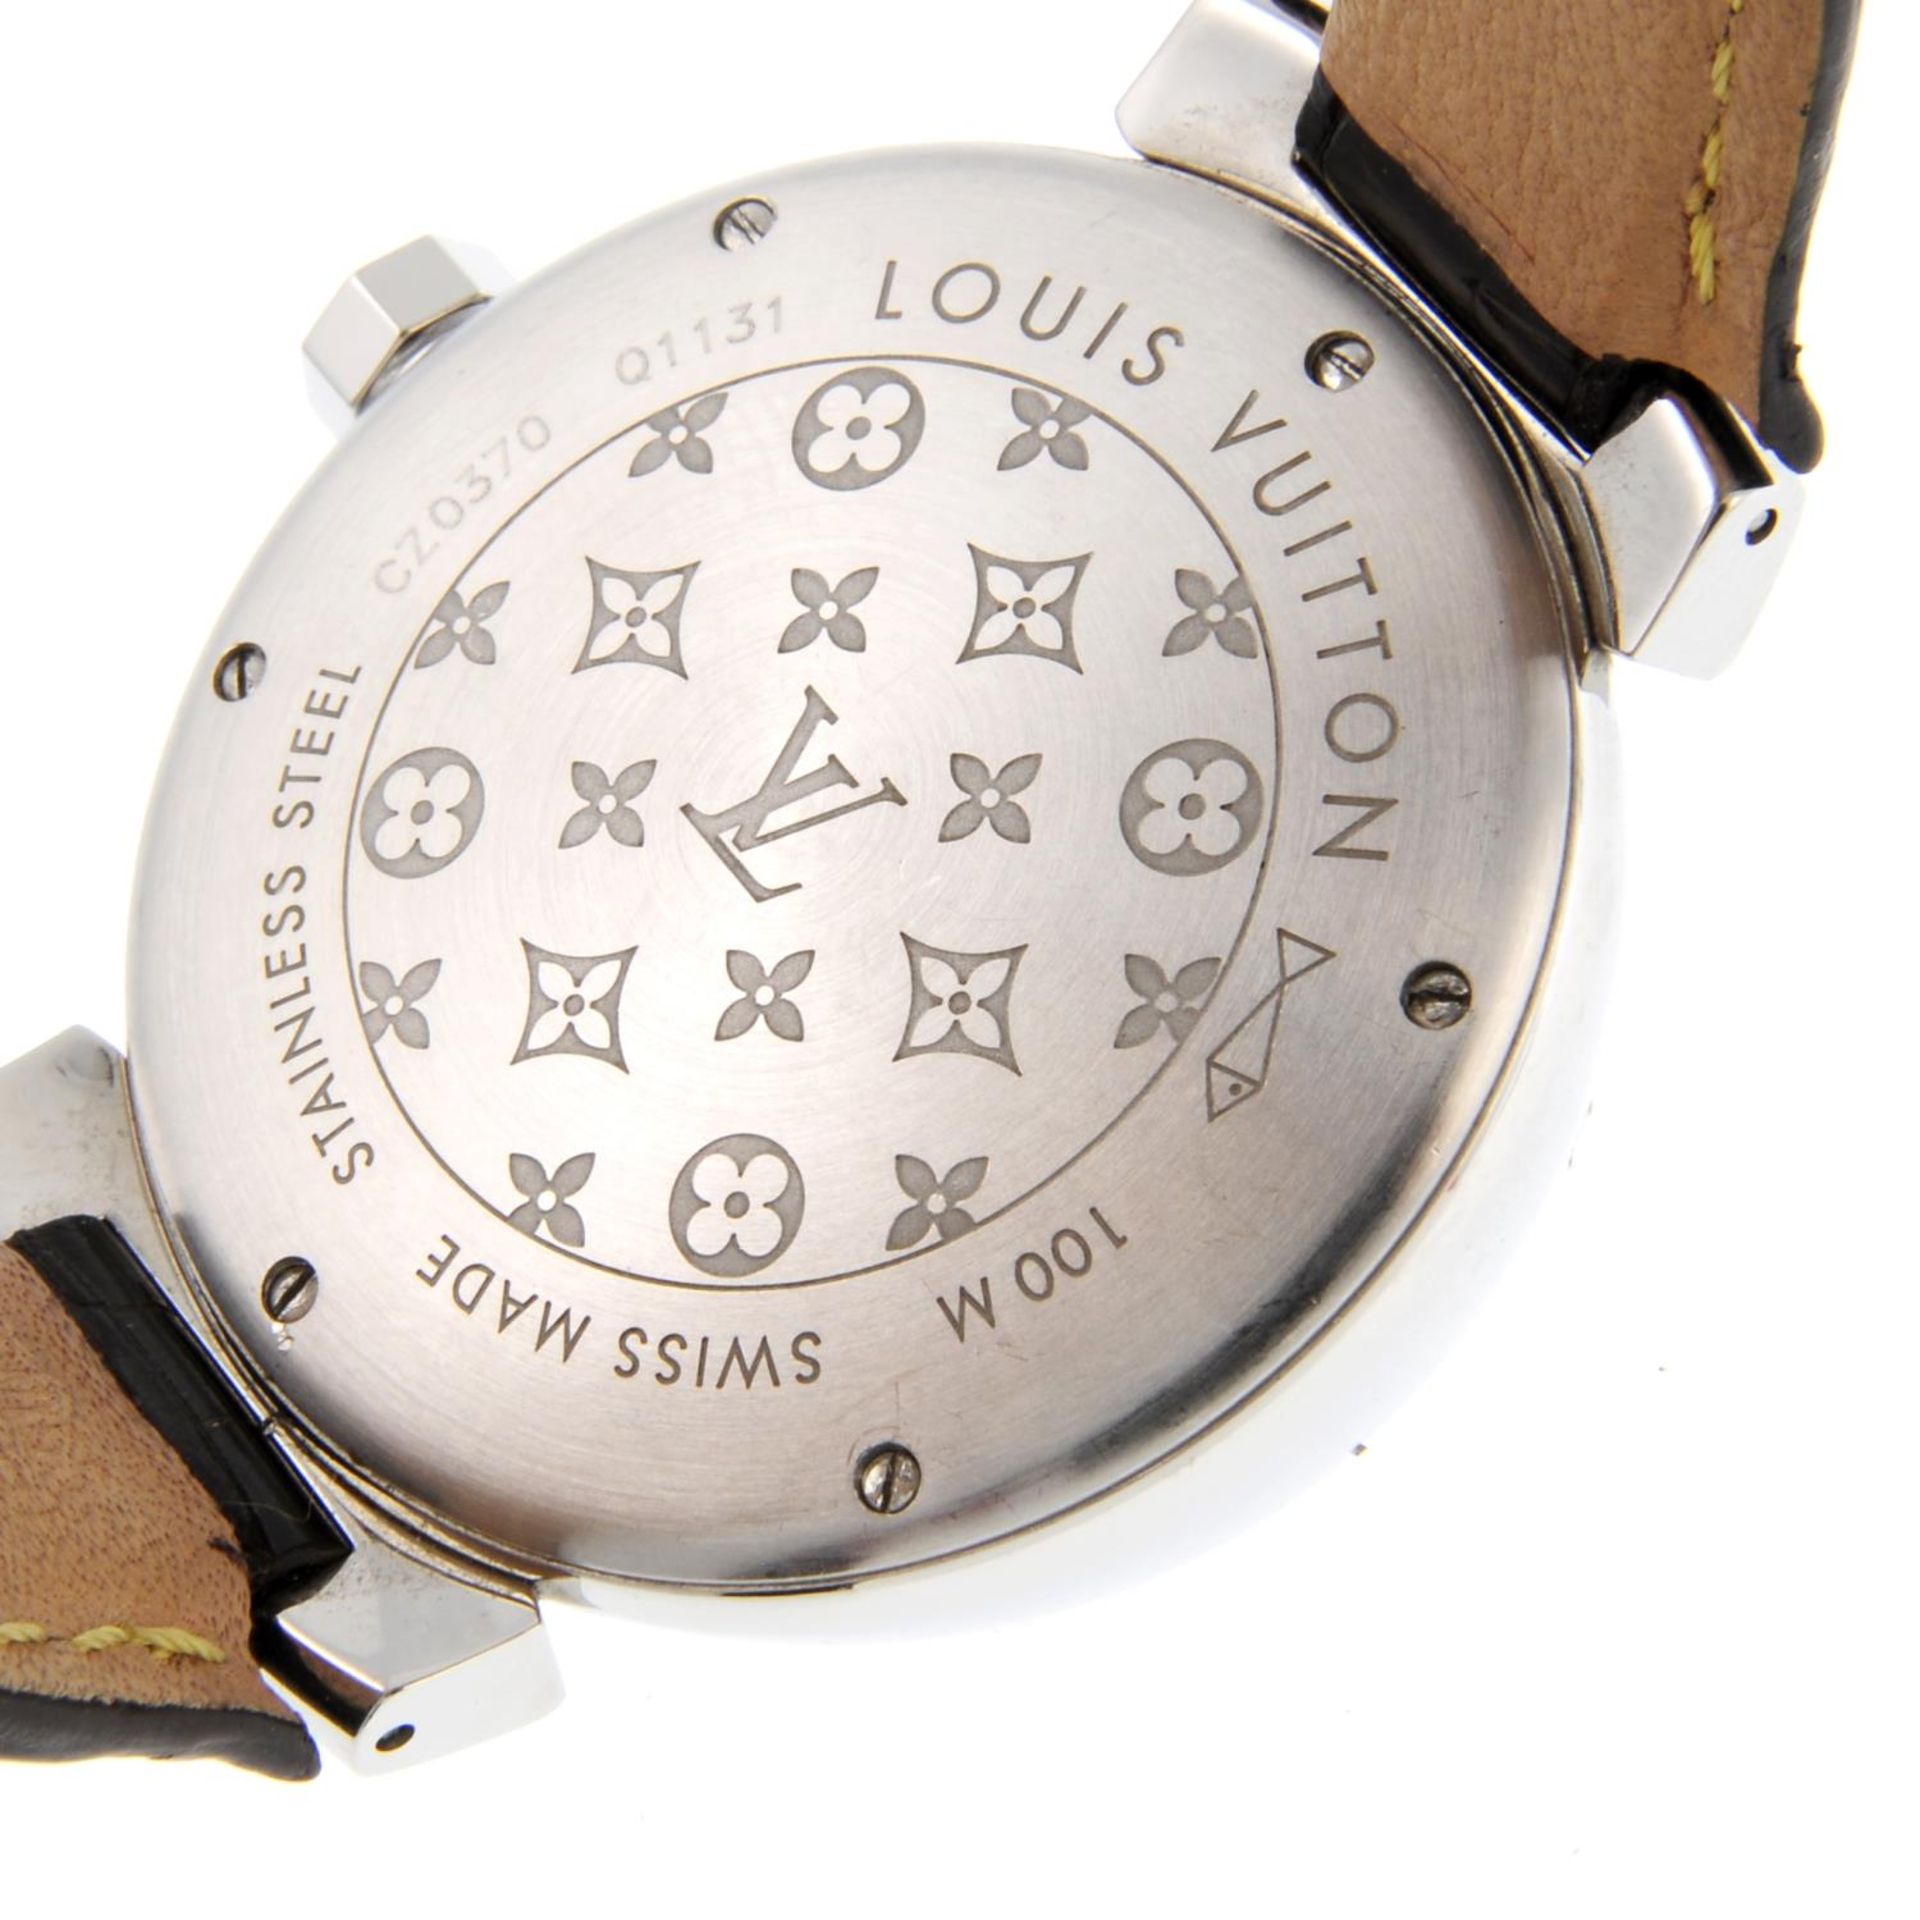 LOUIS VUITTON - a gentleman's Tambour GMT wrist watch. - Bild 5 aus 5